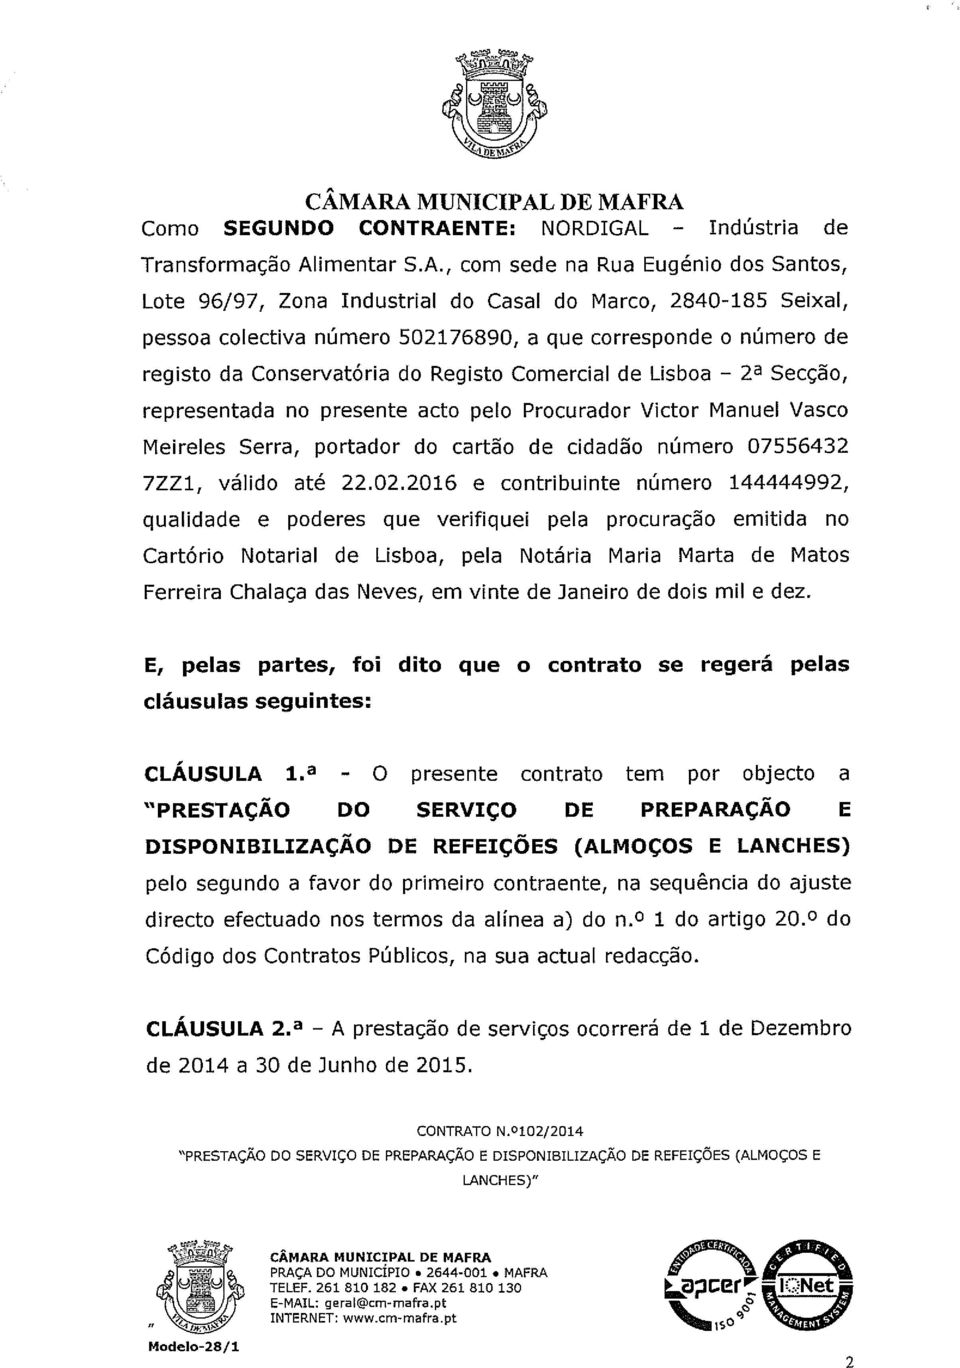 Vasco Meireles Serra, portador do cartão de cidadão número 07556432 7ZZ1, válido até 22.02.